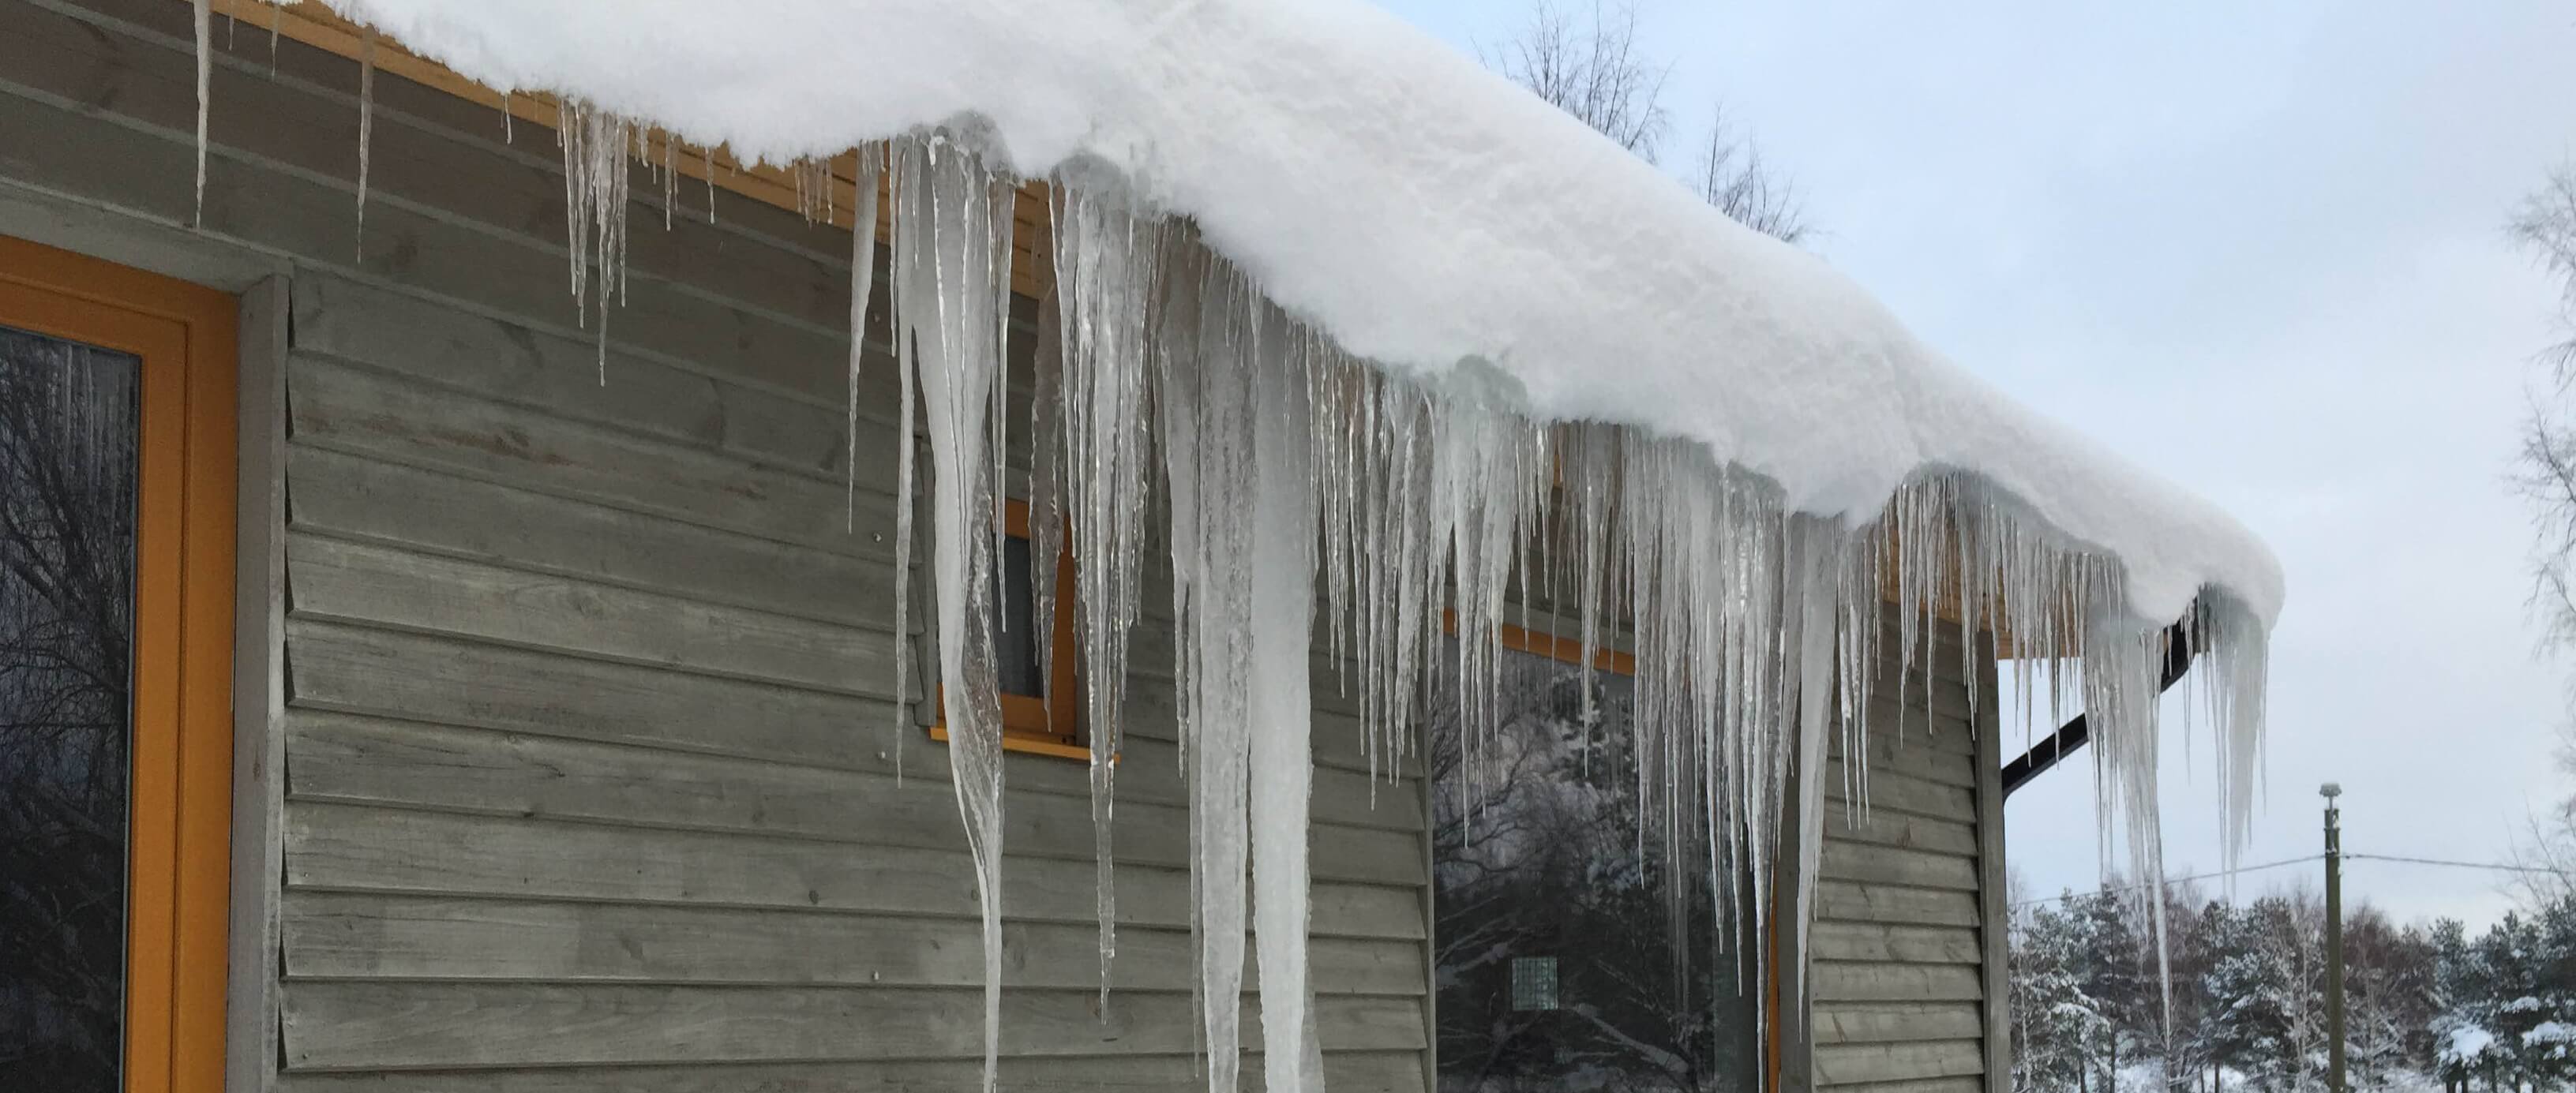 Уборка снега с крыш и удаление сосулек - обязанность владельцев недвижимости